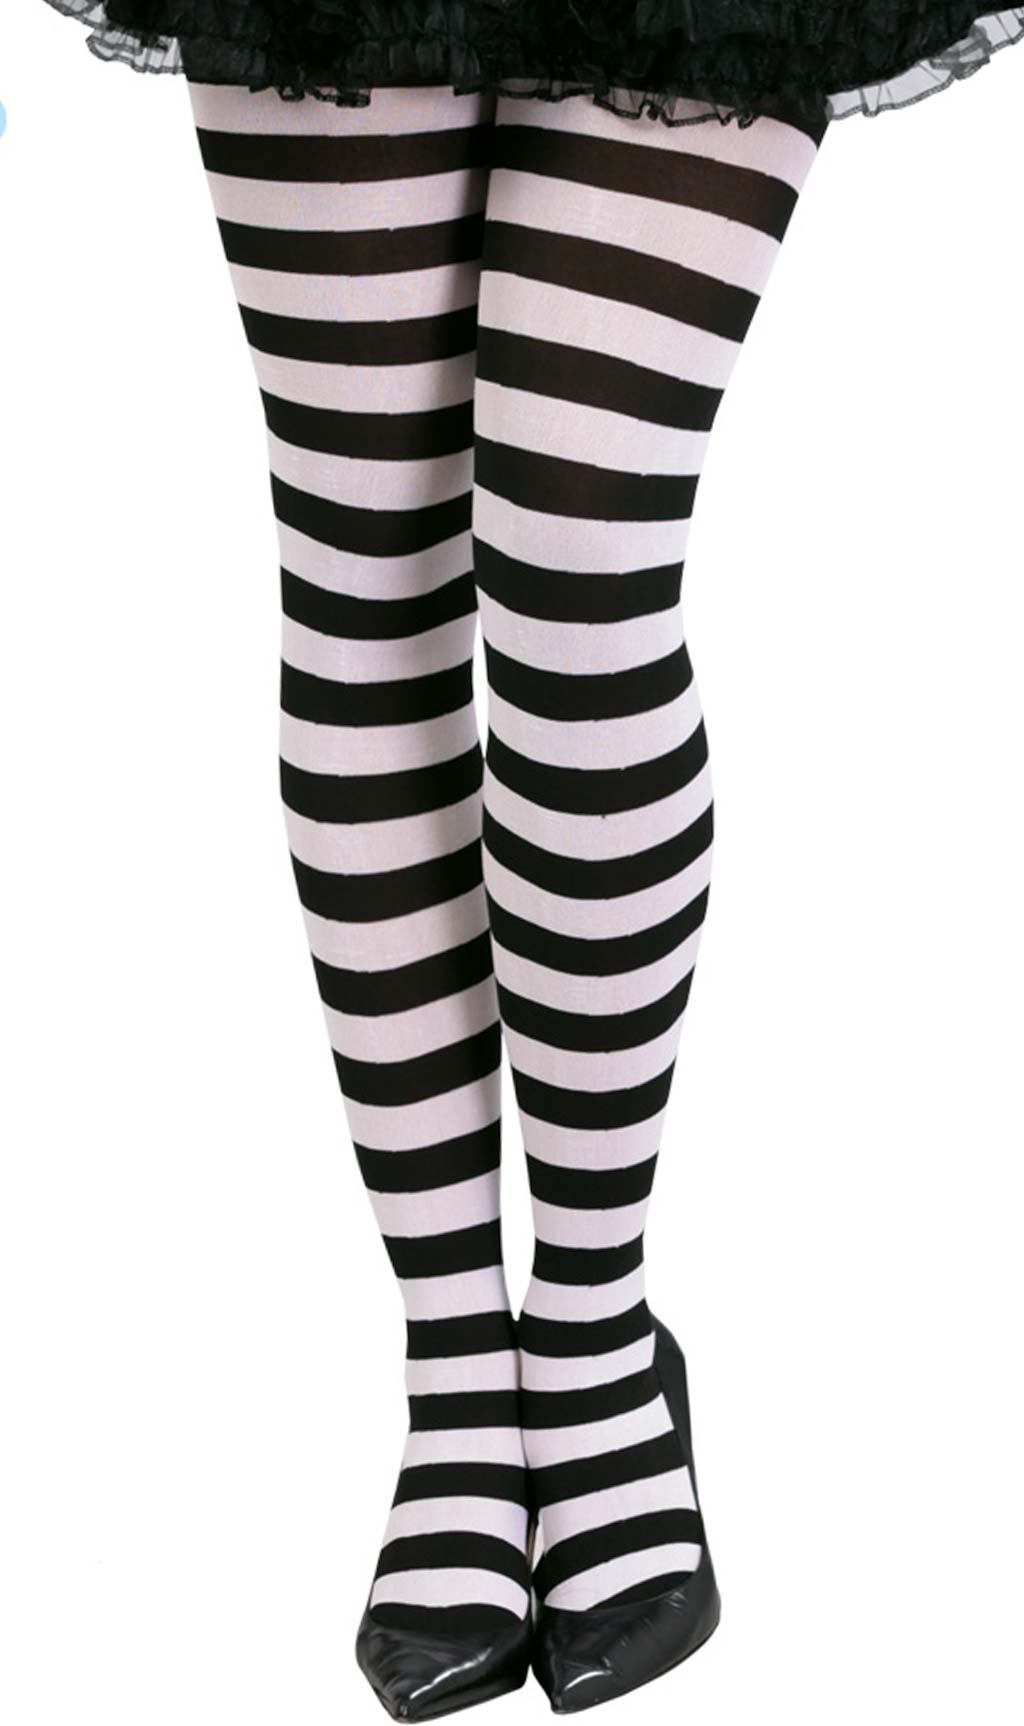 Pantys de malla negra para mujer ideales para Halloween: Accesorios,y  disfraces originales baratos - Vegaoo